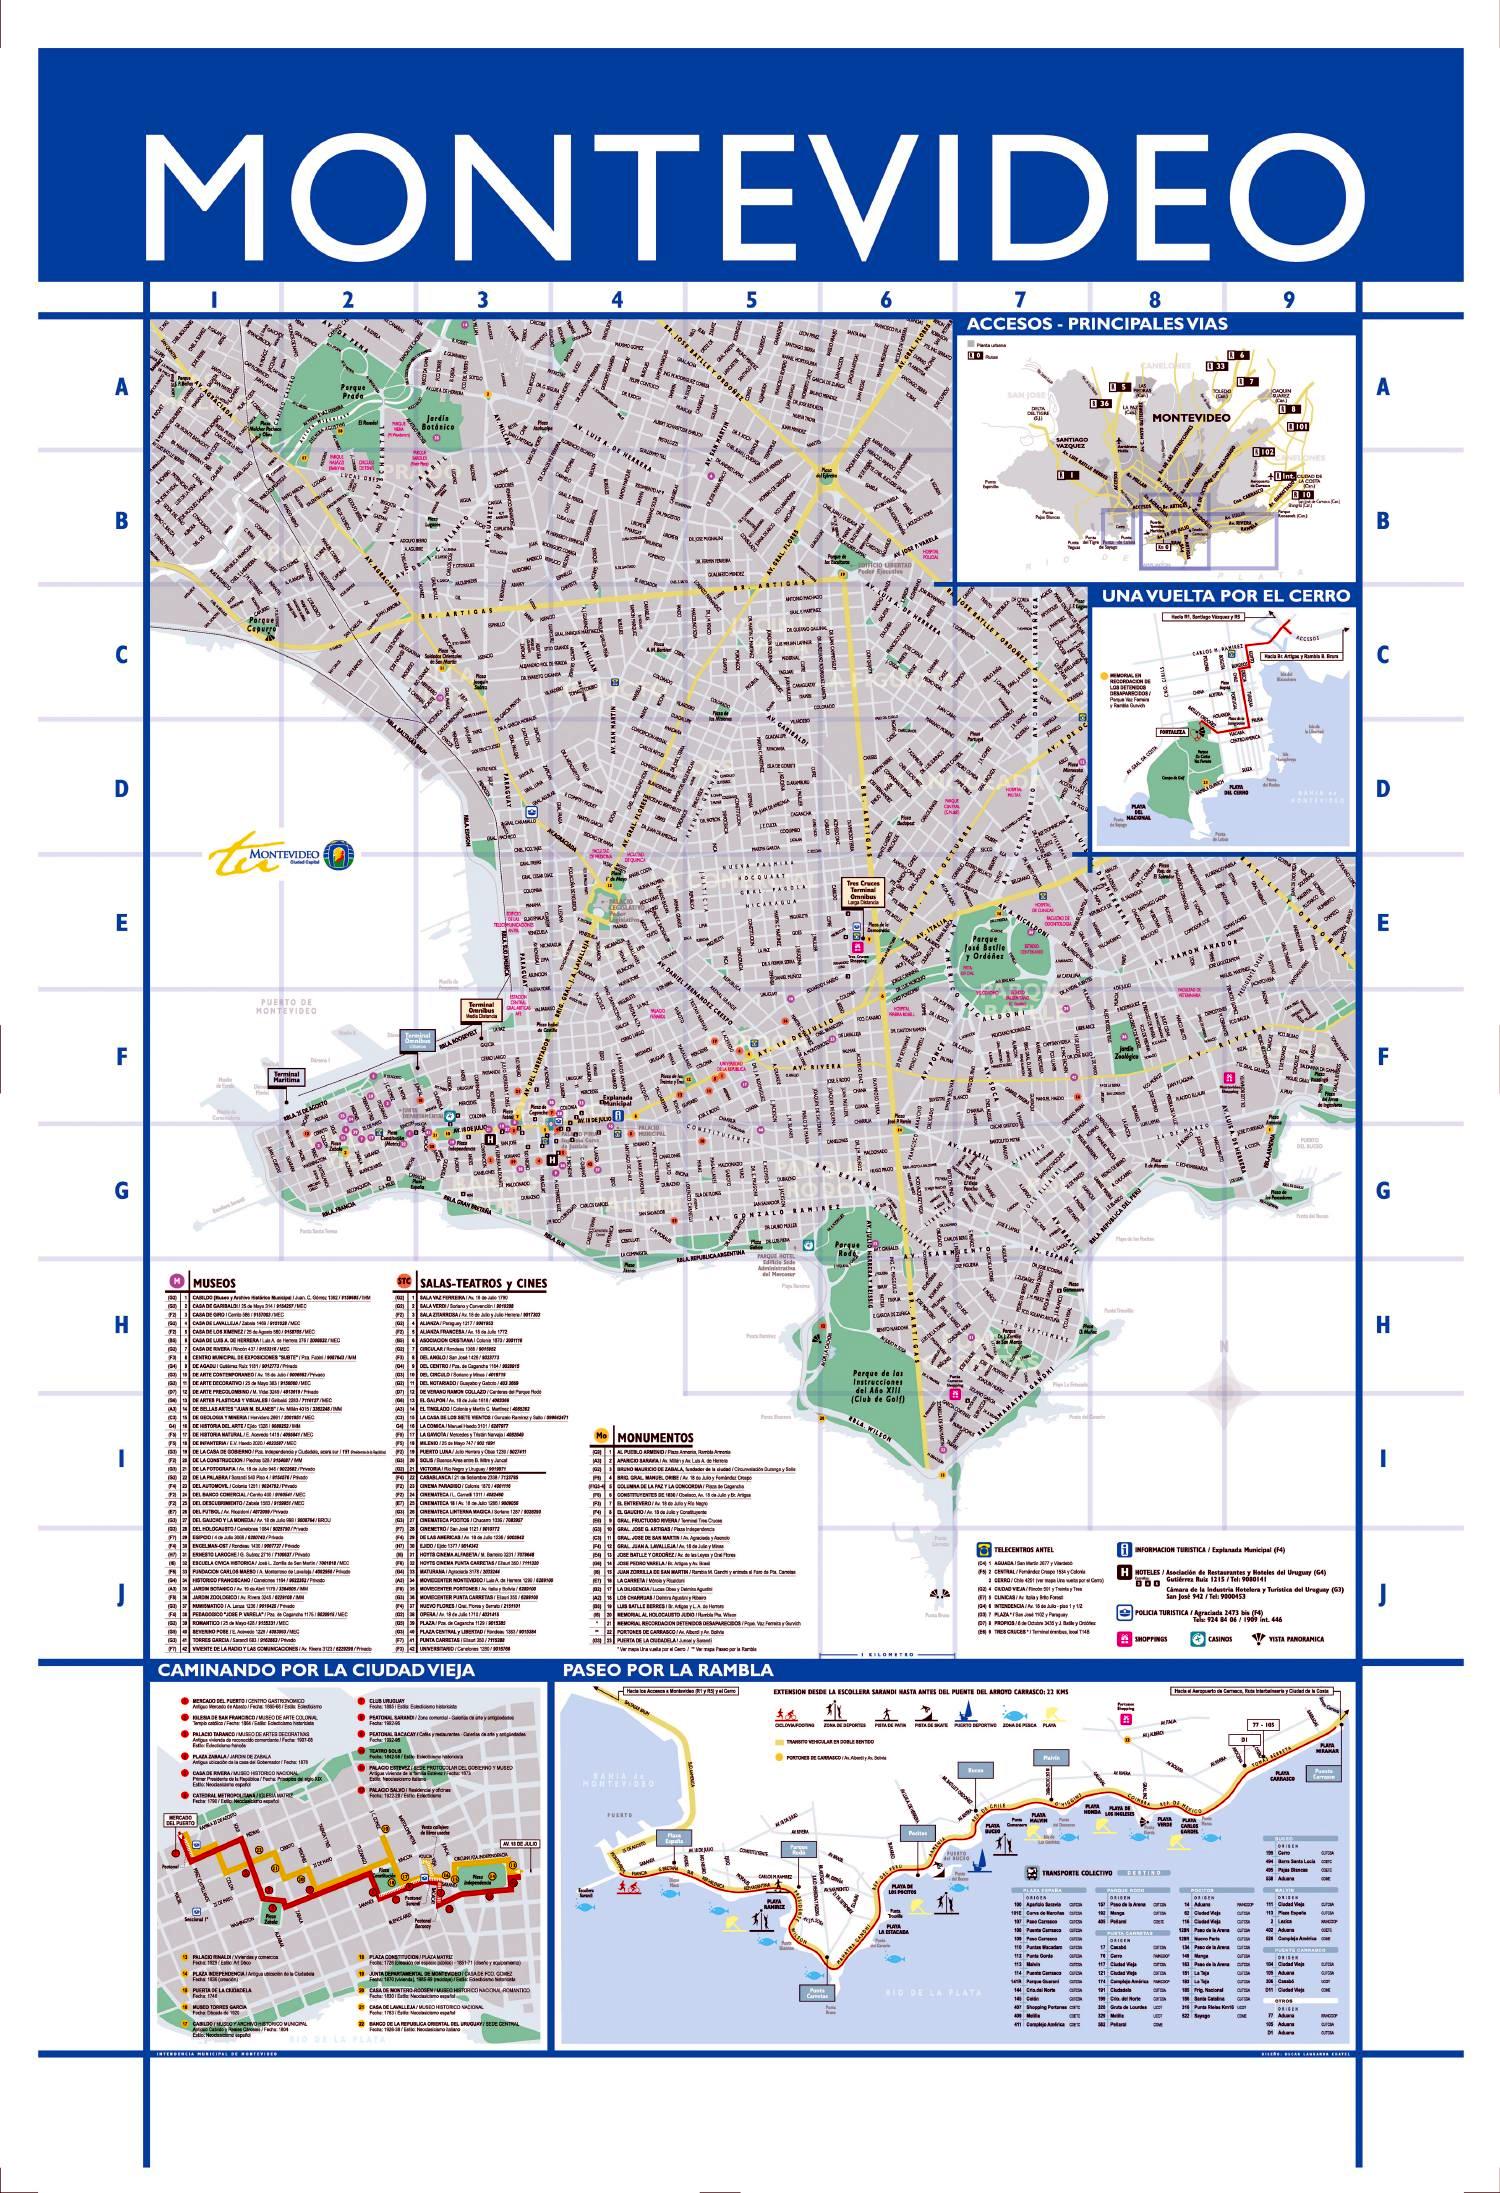 Montevideo Medium Scale Map, Uruguay